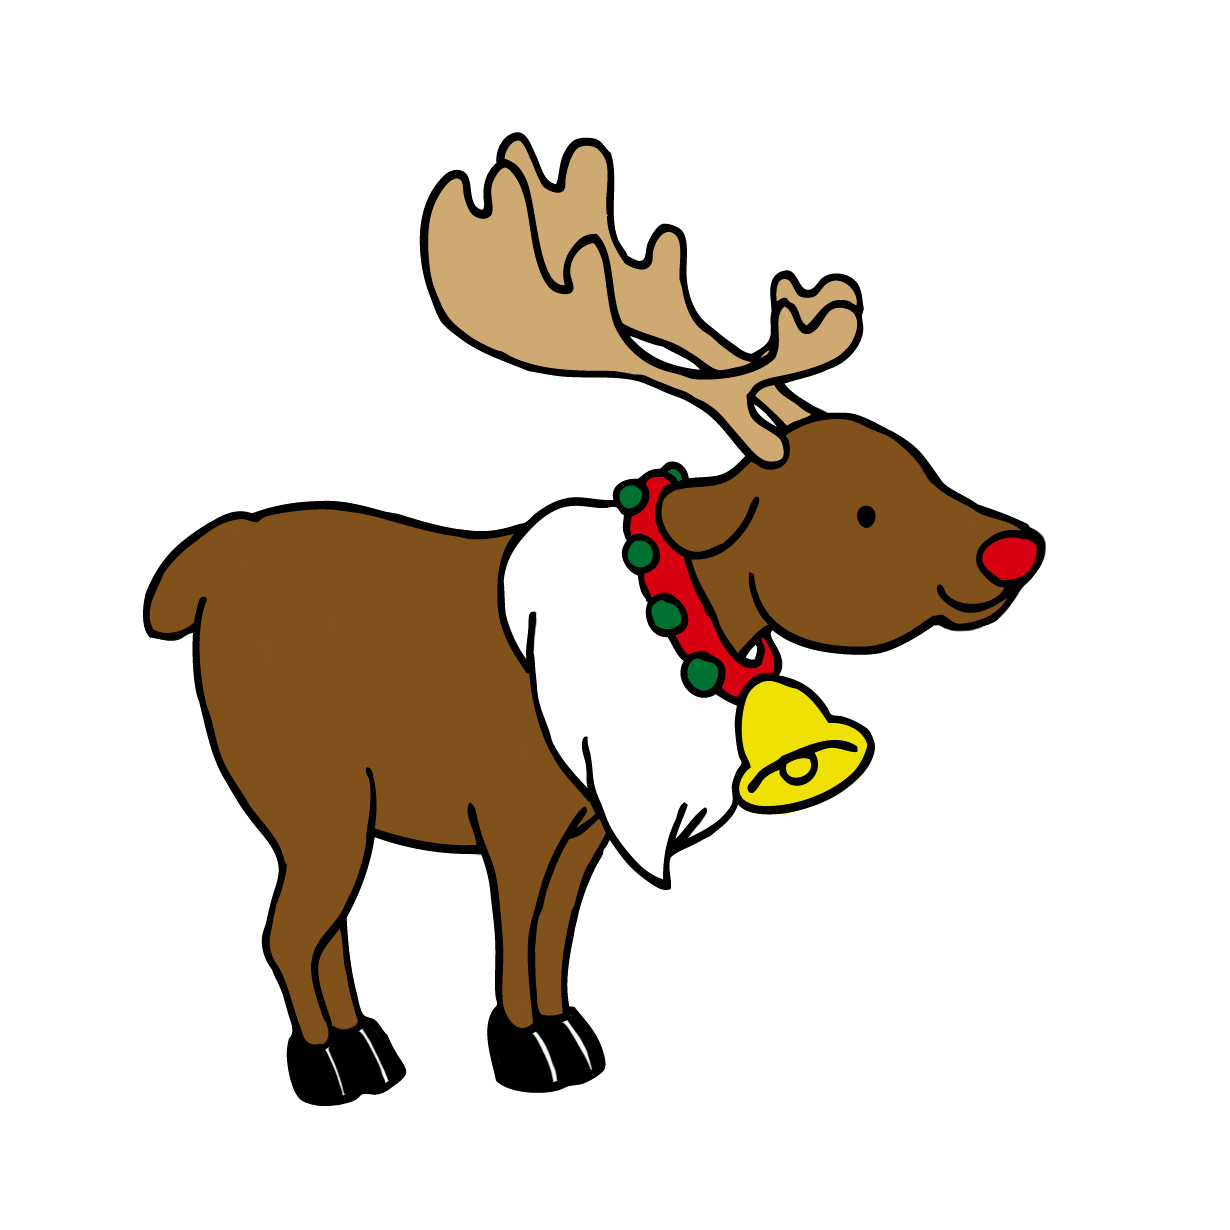 クリスマスの可愛いトナカイ動物イラスト 無料イラスト配布サイトマンガトップ